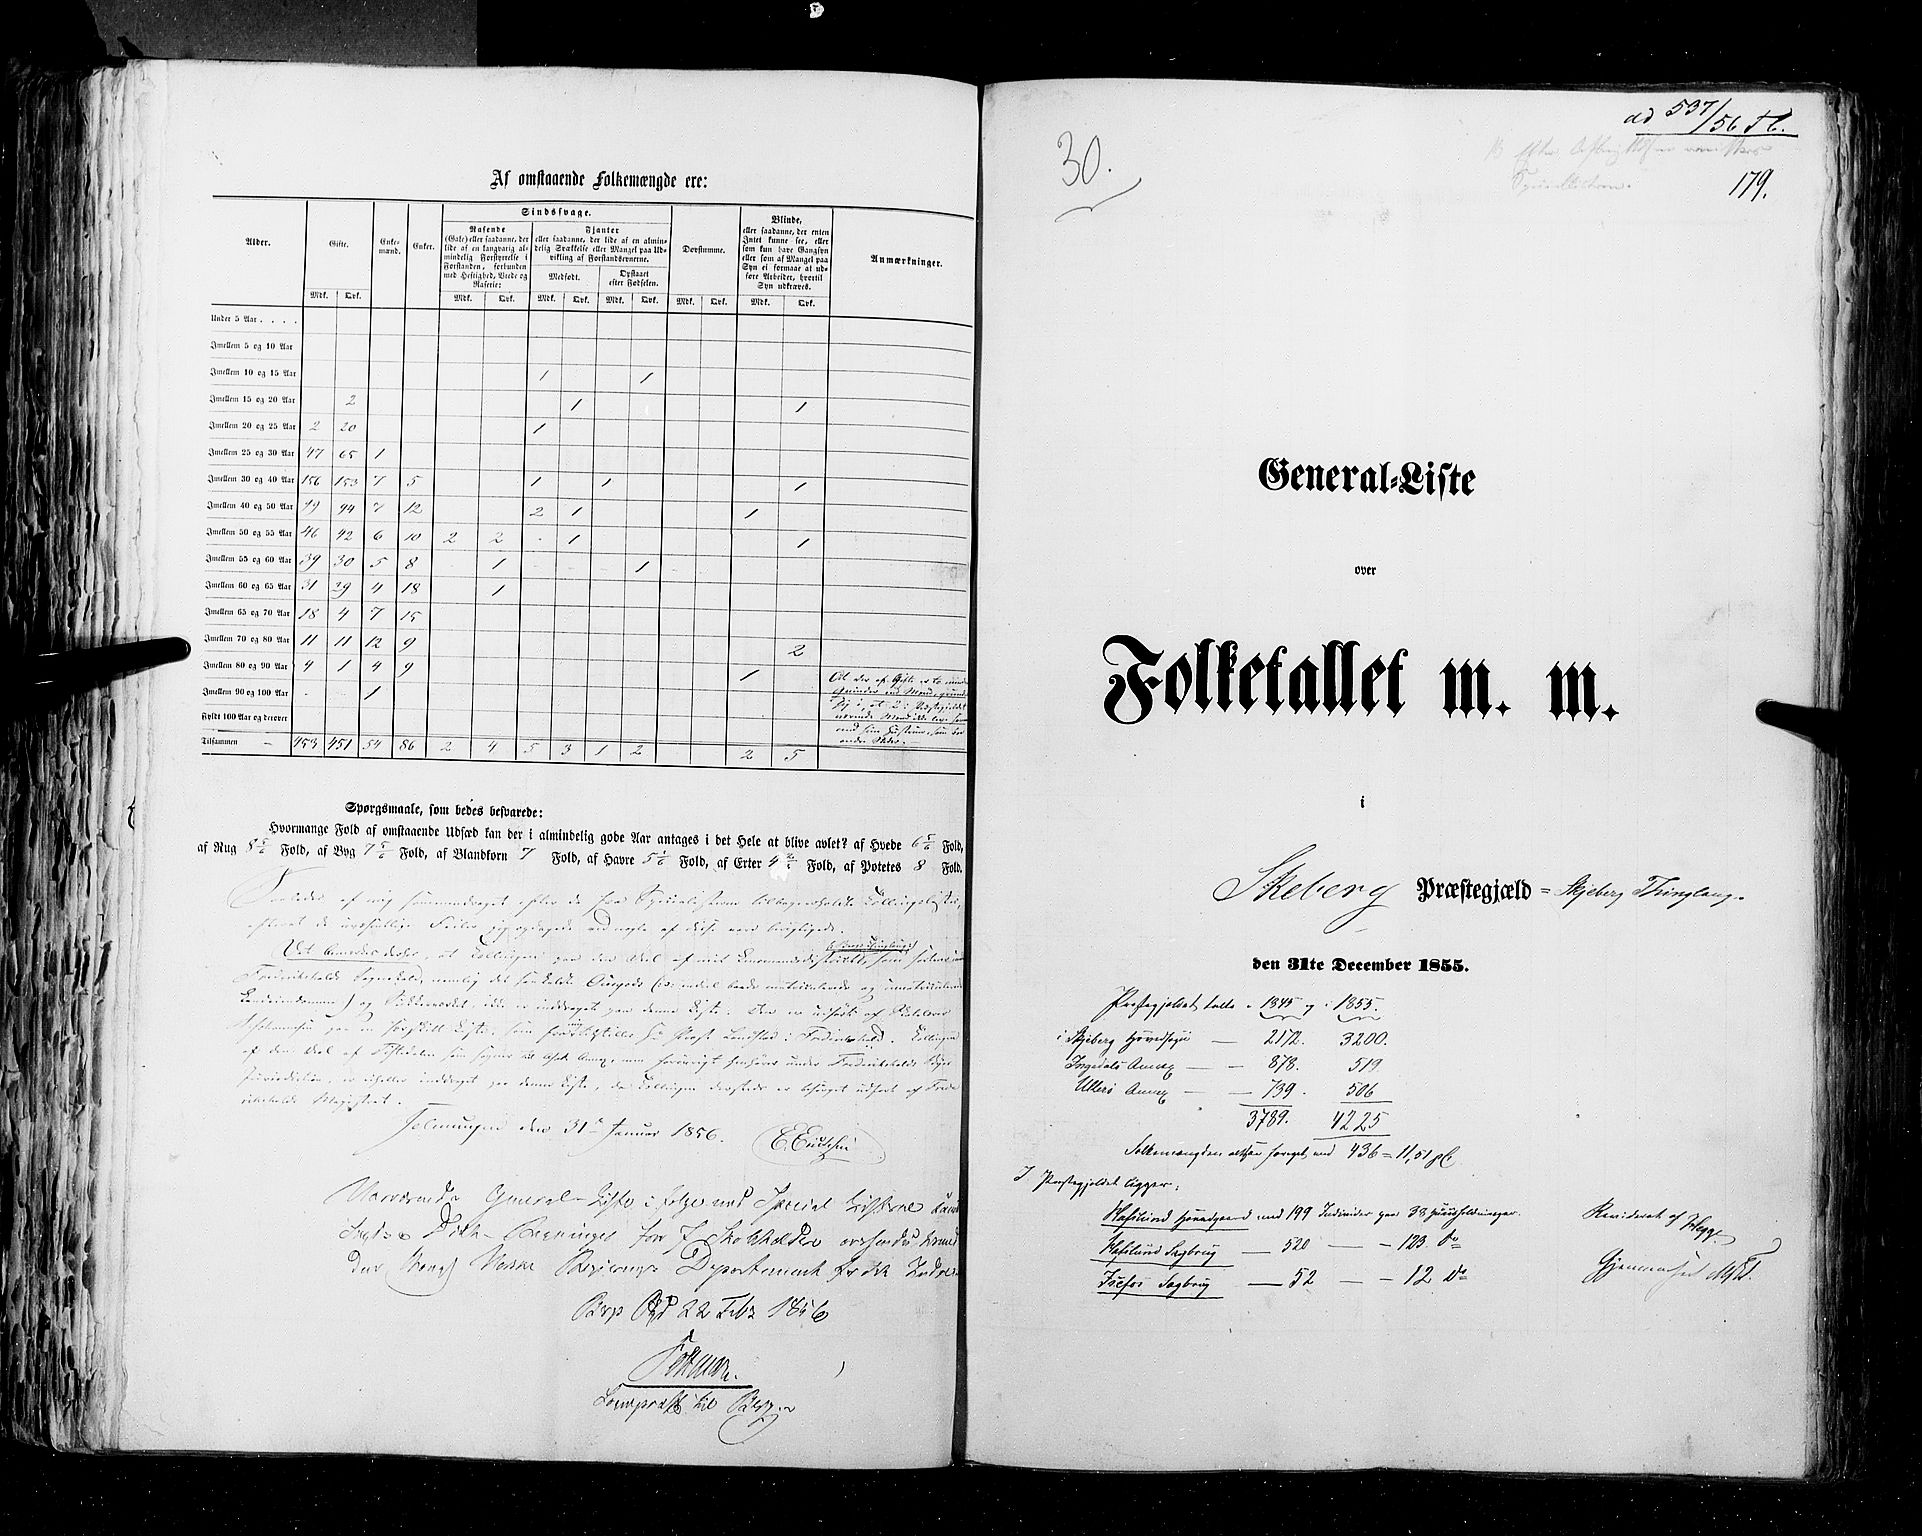 RA, Folketellingen 1855, bind 1: Akershus amt, Smålenenes amt og Hedemarken amt, 1855, s. 179